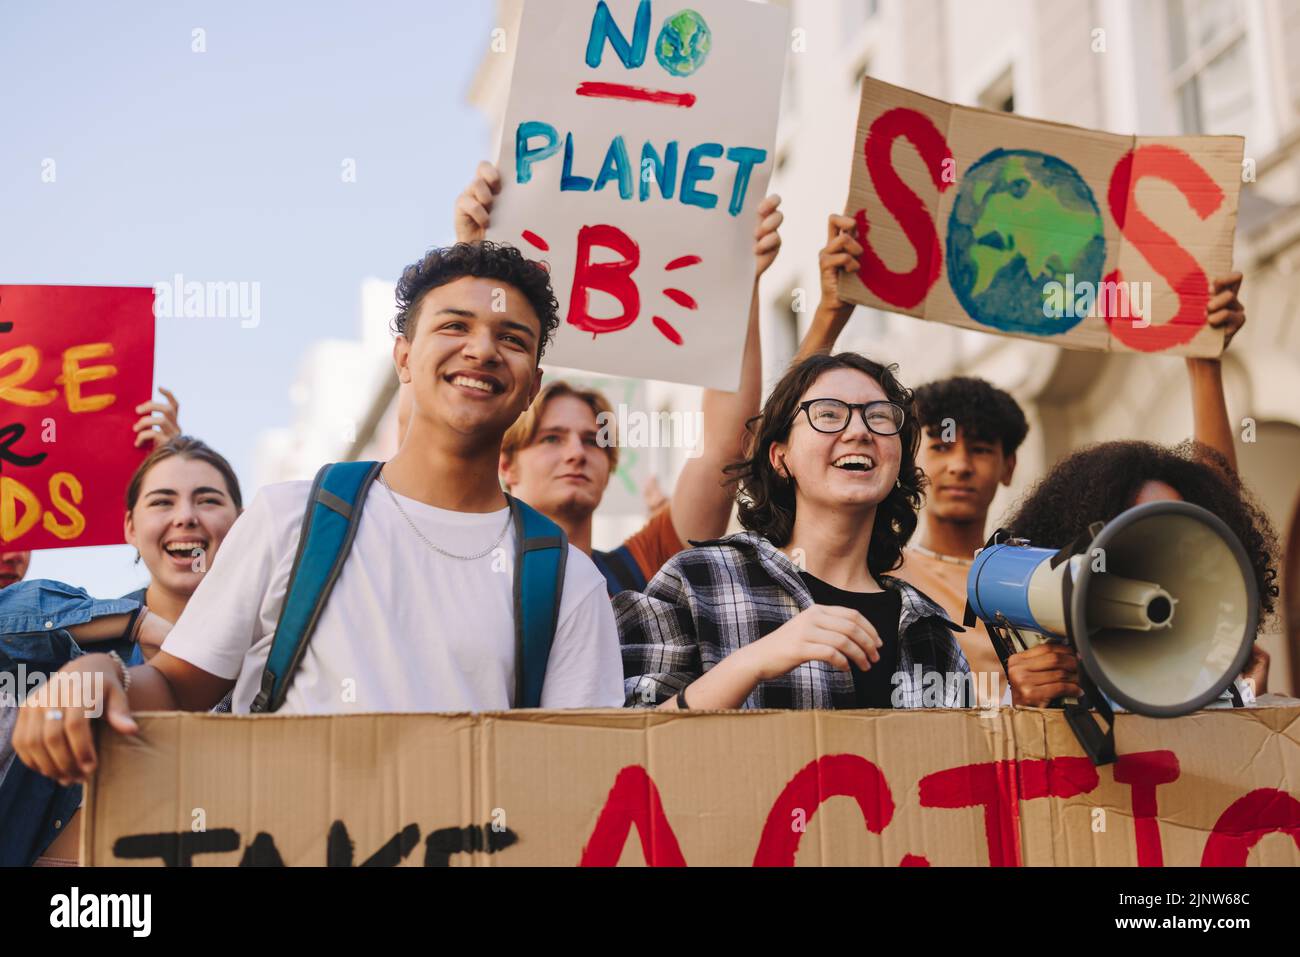 Umweltaktivismus der Generation Z. Glückliche junge Menschen mit Plakaten und Spruchbändern, während sie gegen den Klimawandel marschieren. Multikulturelle Jugendarbeit Stockfoto